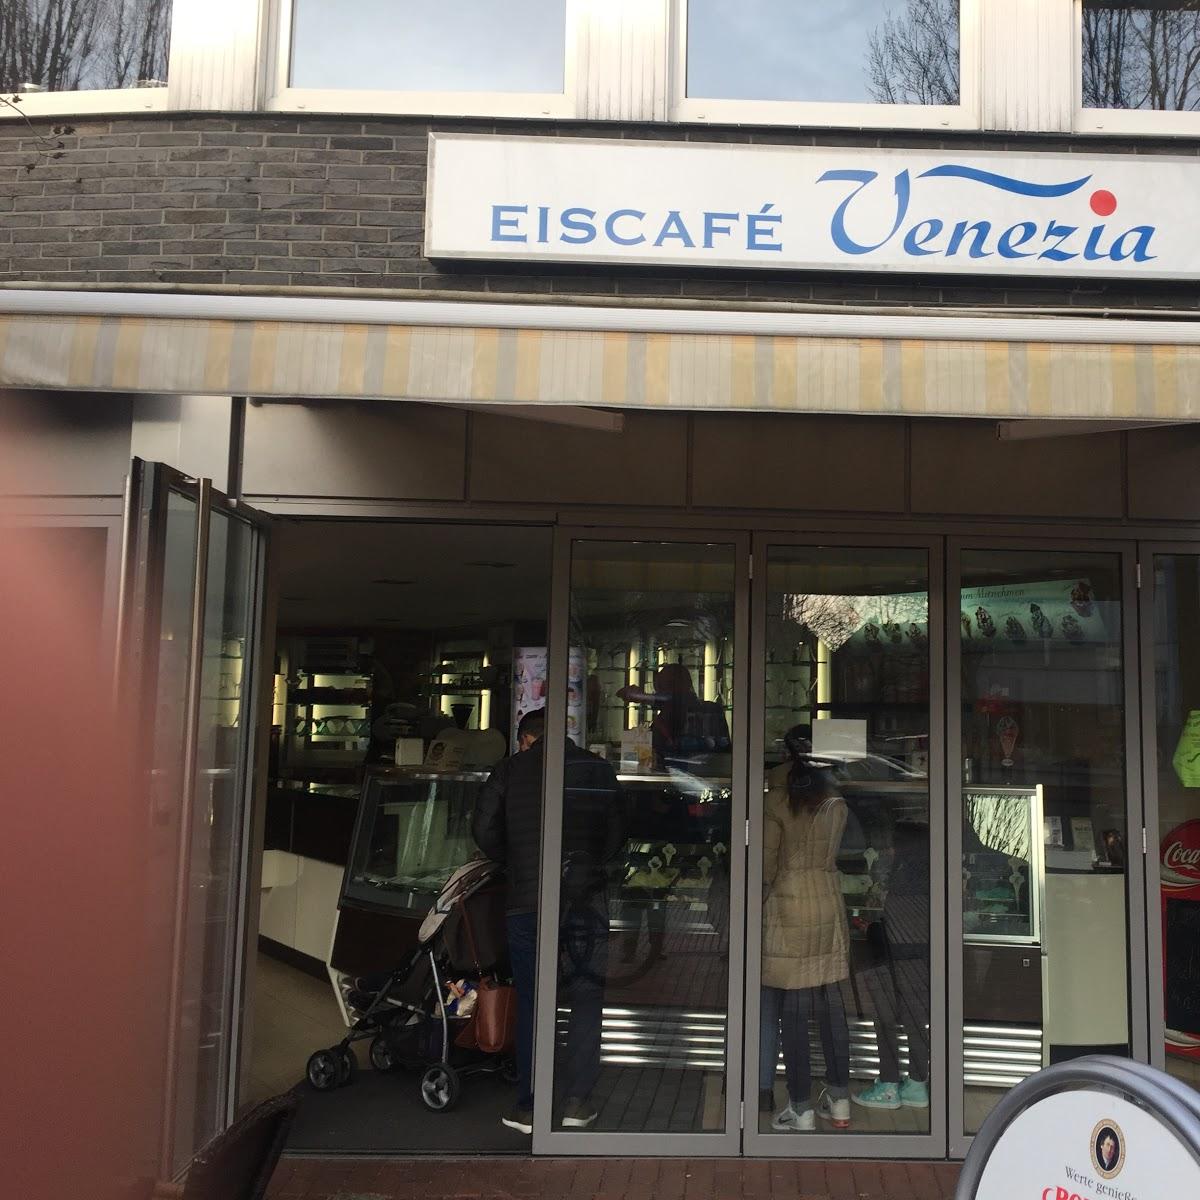 Restaurant "Eiscafé Venezia" in Recke